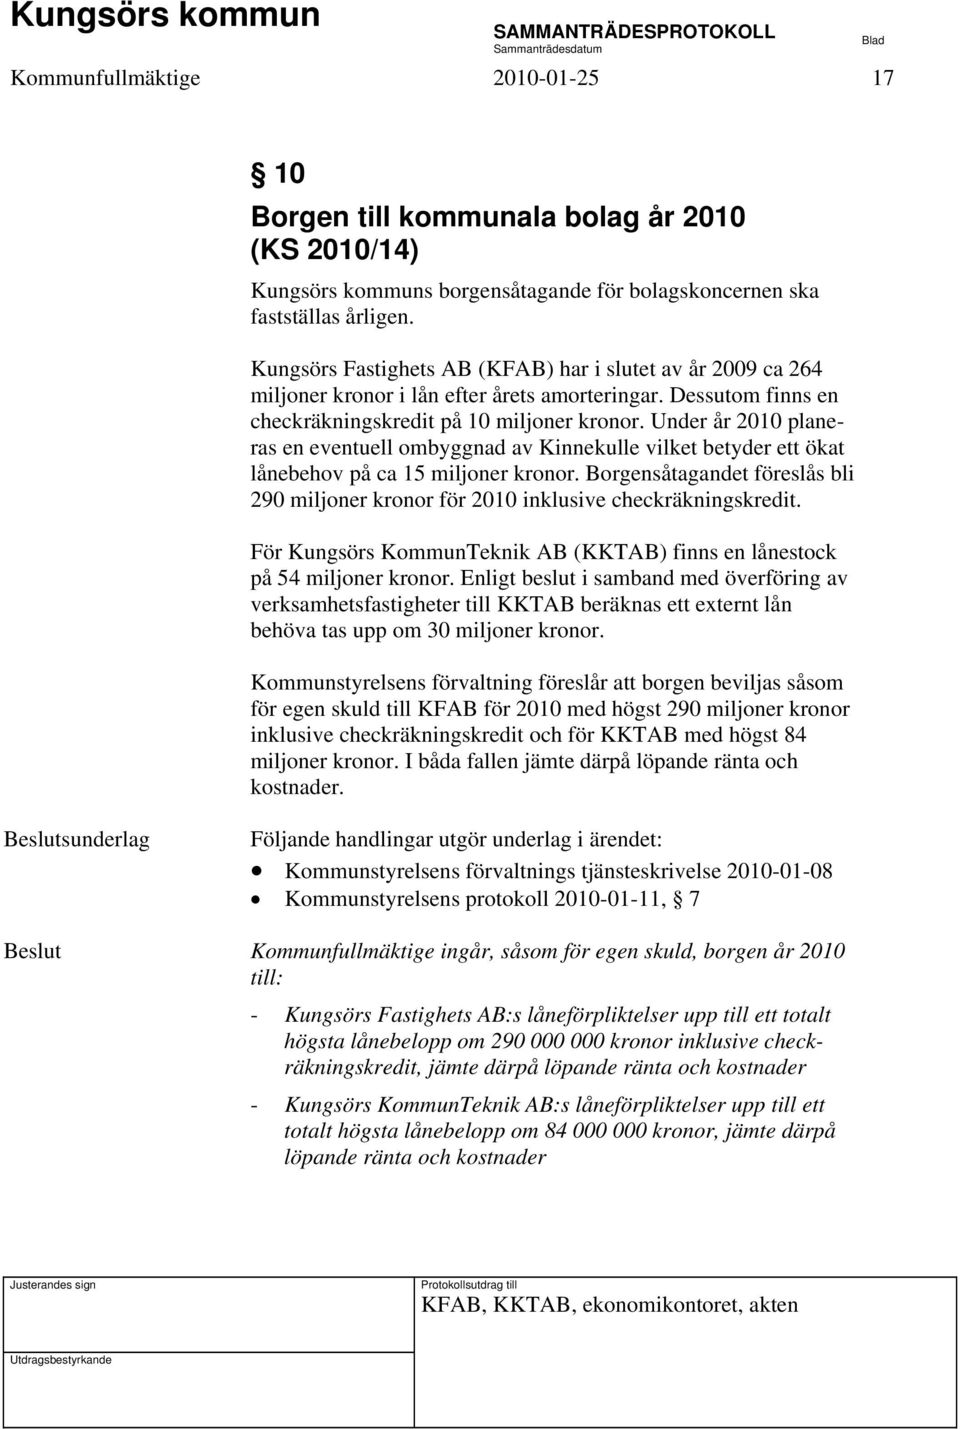 Under år 2010 planeras en eventuell ombyggnad av Kinnekulle vilket betyder ett ökat lånebehov på ca 15 miljoner kronor.